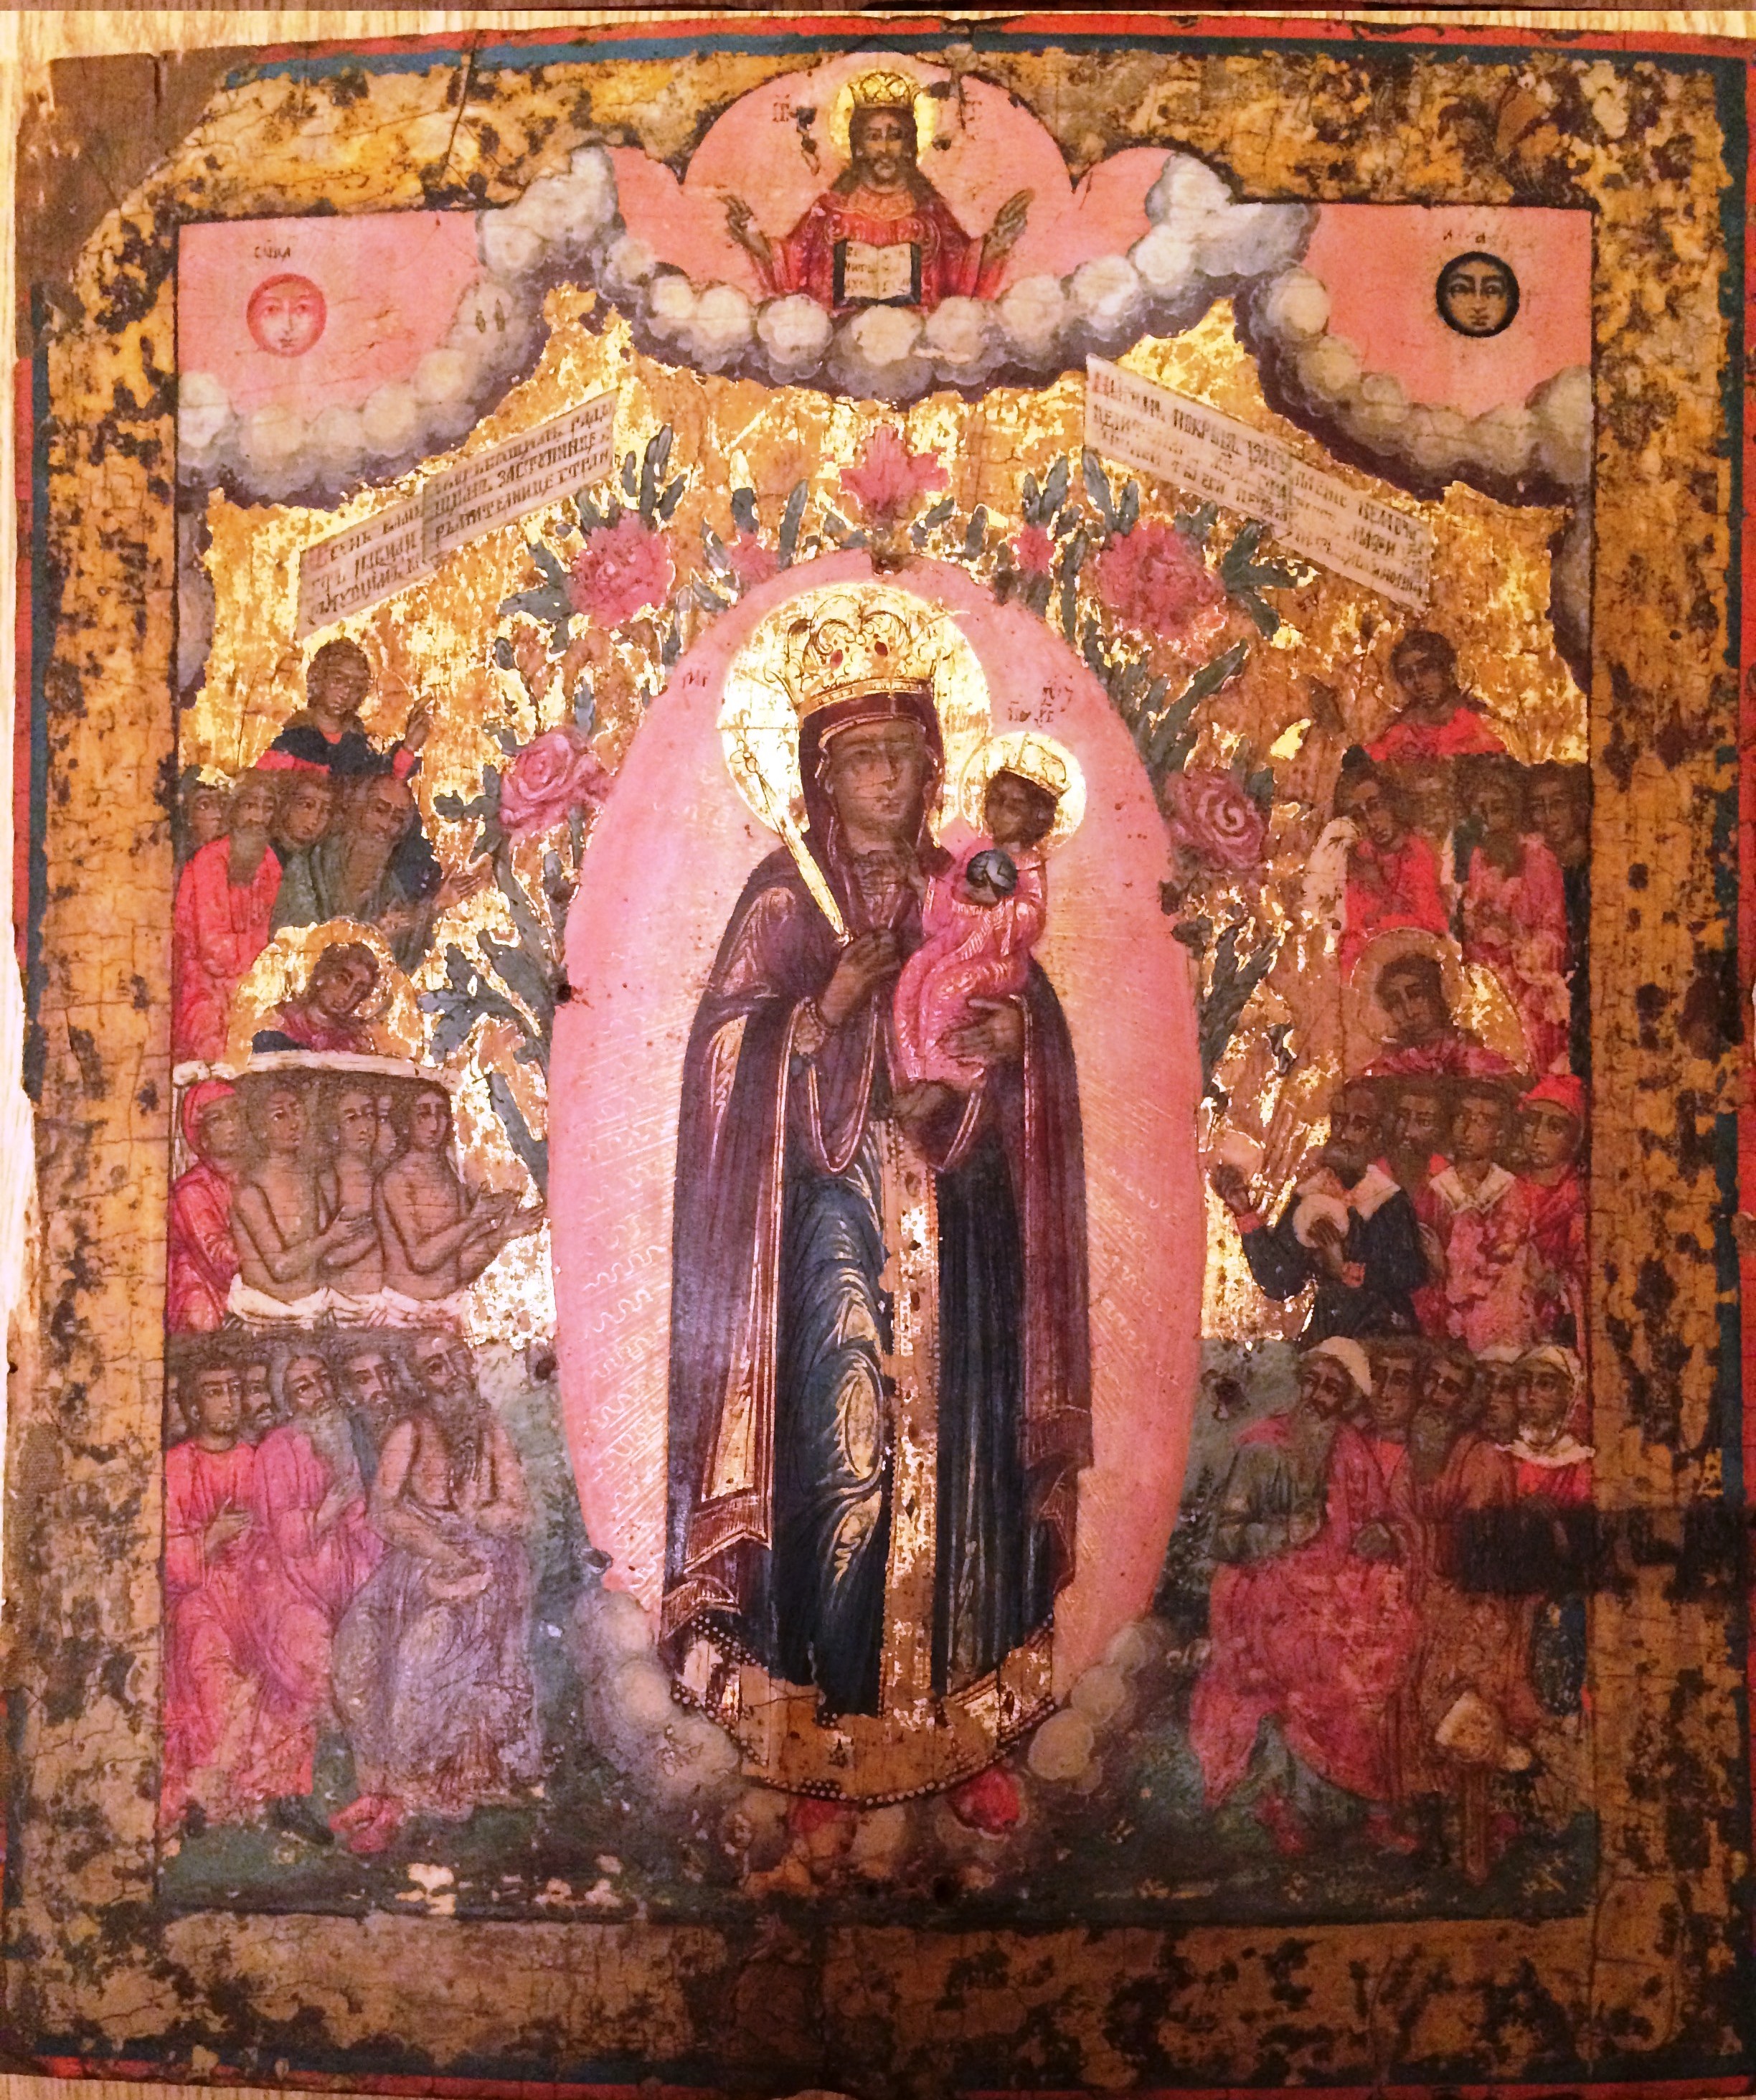 Икона 18 века Богородица всех скорбящих радость, в хорошем состоянии без вмешательств, высота 36 см